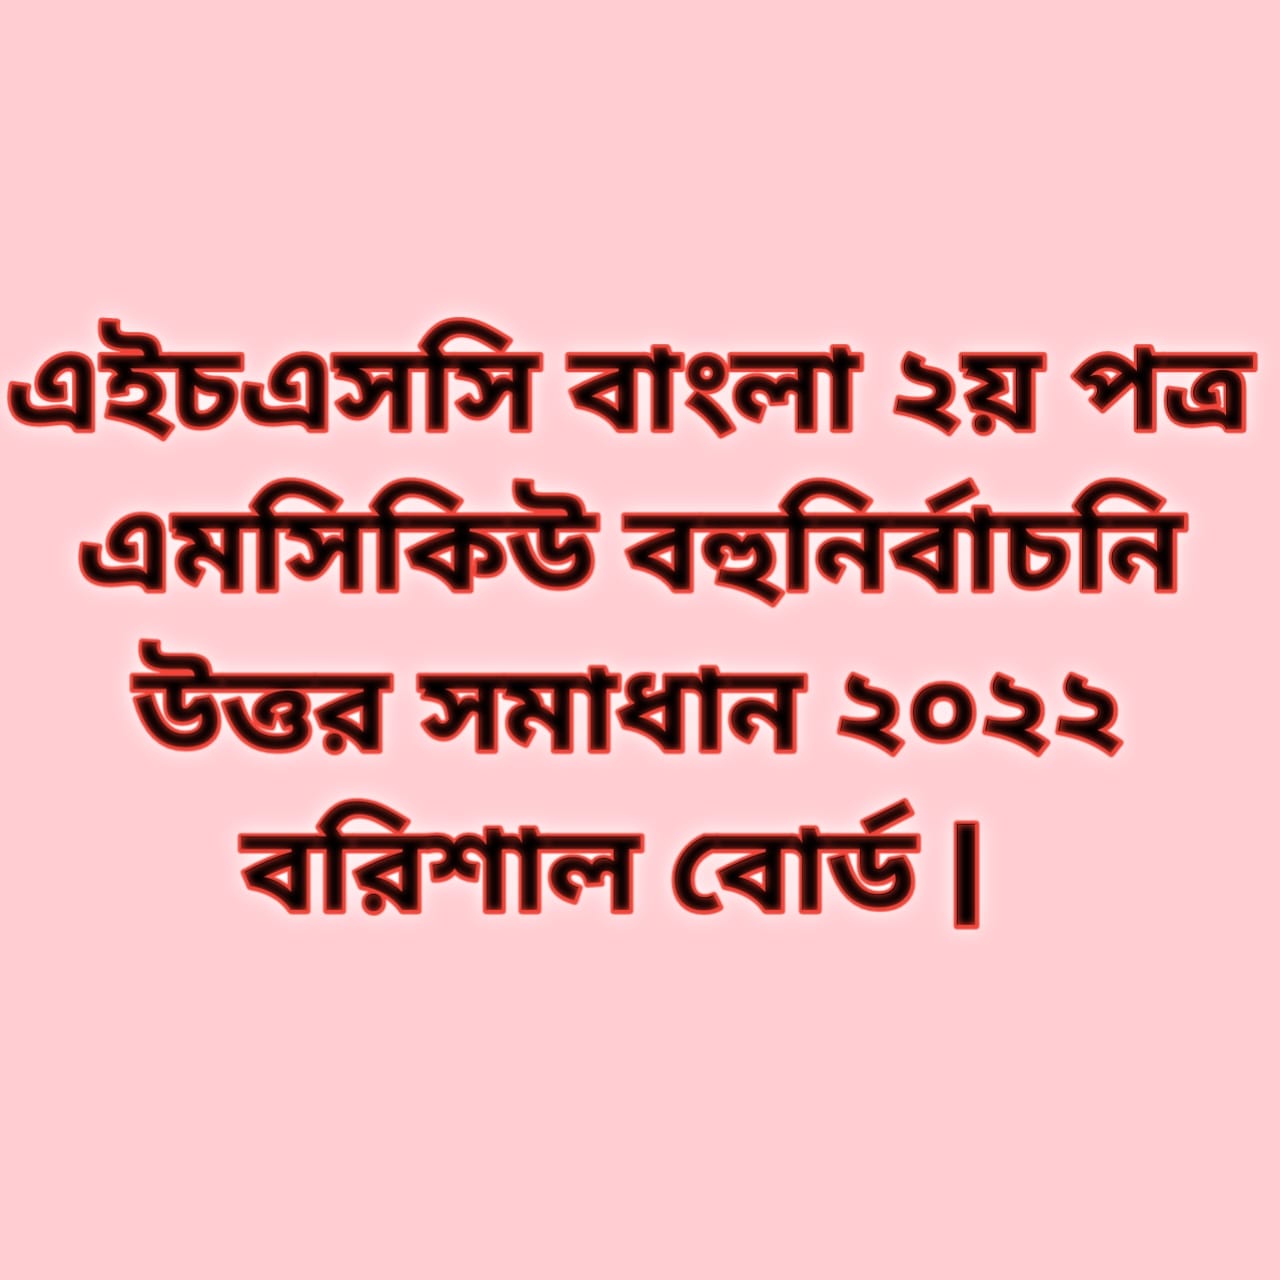 এইচএসসি বাংলা ২য় পত্র এমসিকিউ নৈব্যন্তিক বহুনির্বাচনি প্রশ্ন উত্তর সমাধান ২০২২ বরিশাল বোর্ড, hsc Bangla 2nd paper mcq question solution answer 2022 Barisal Board